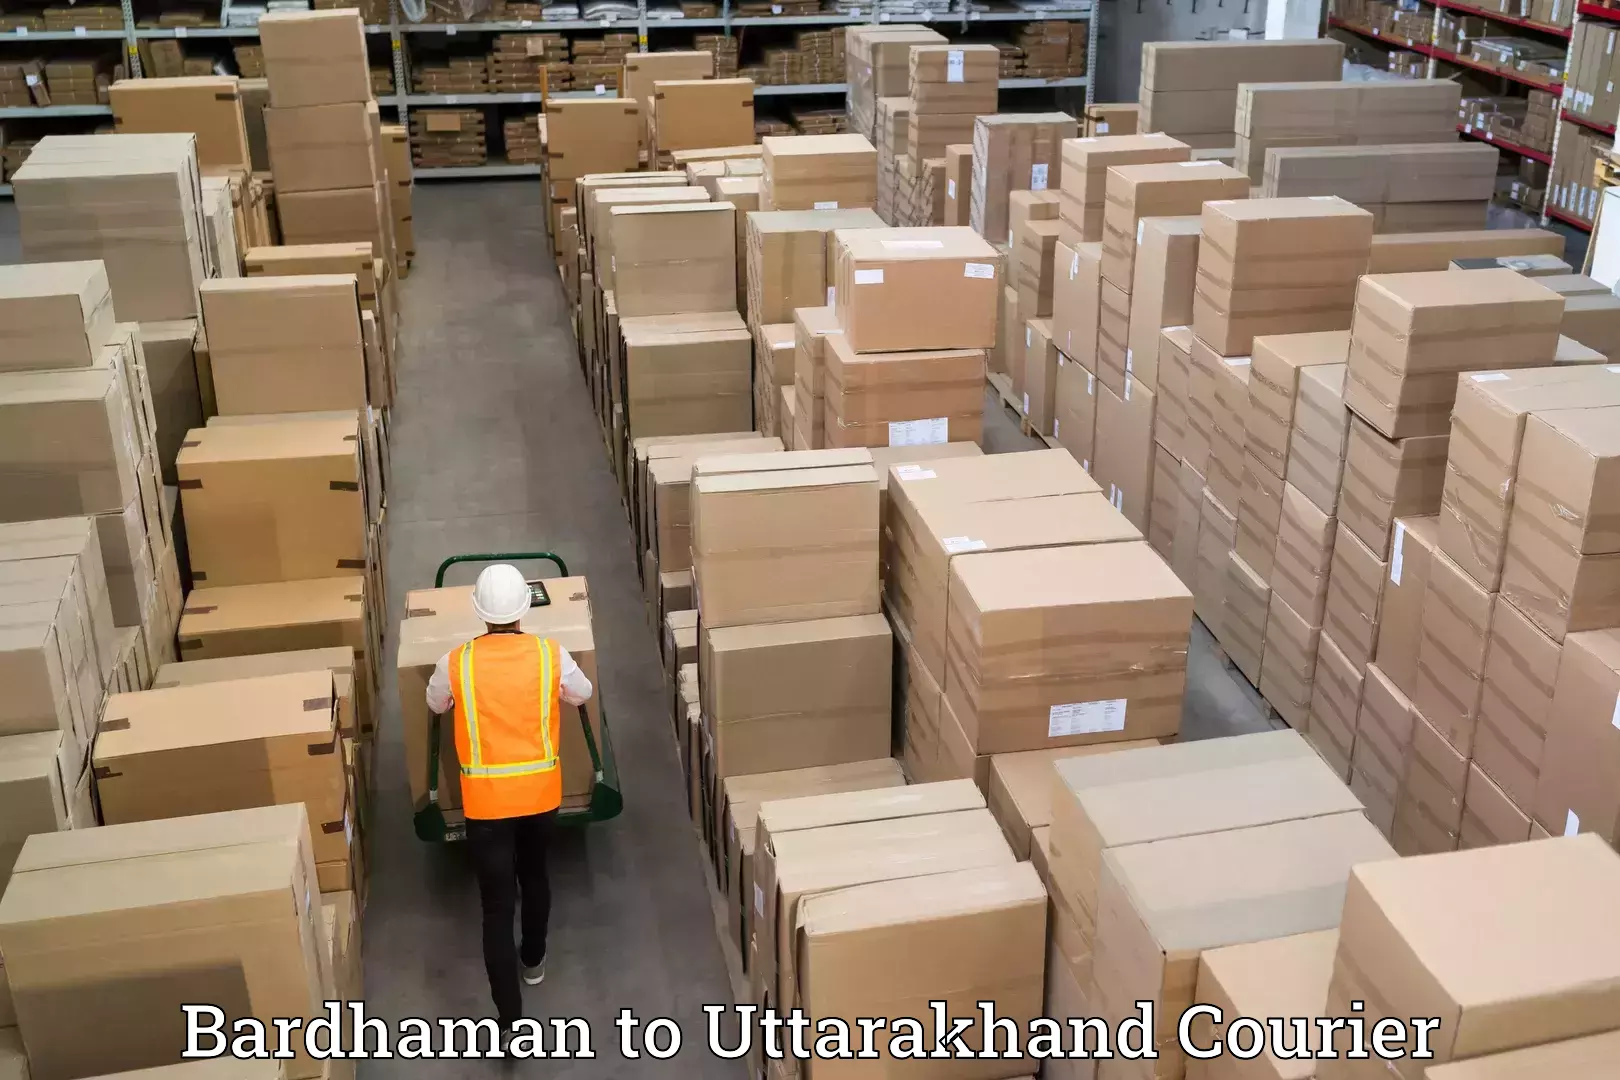 Stress-free moving in Bardhaman to Uttarakhand